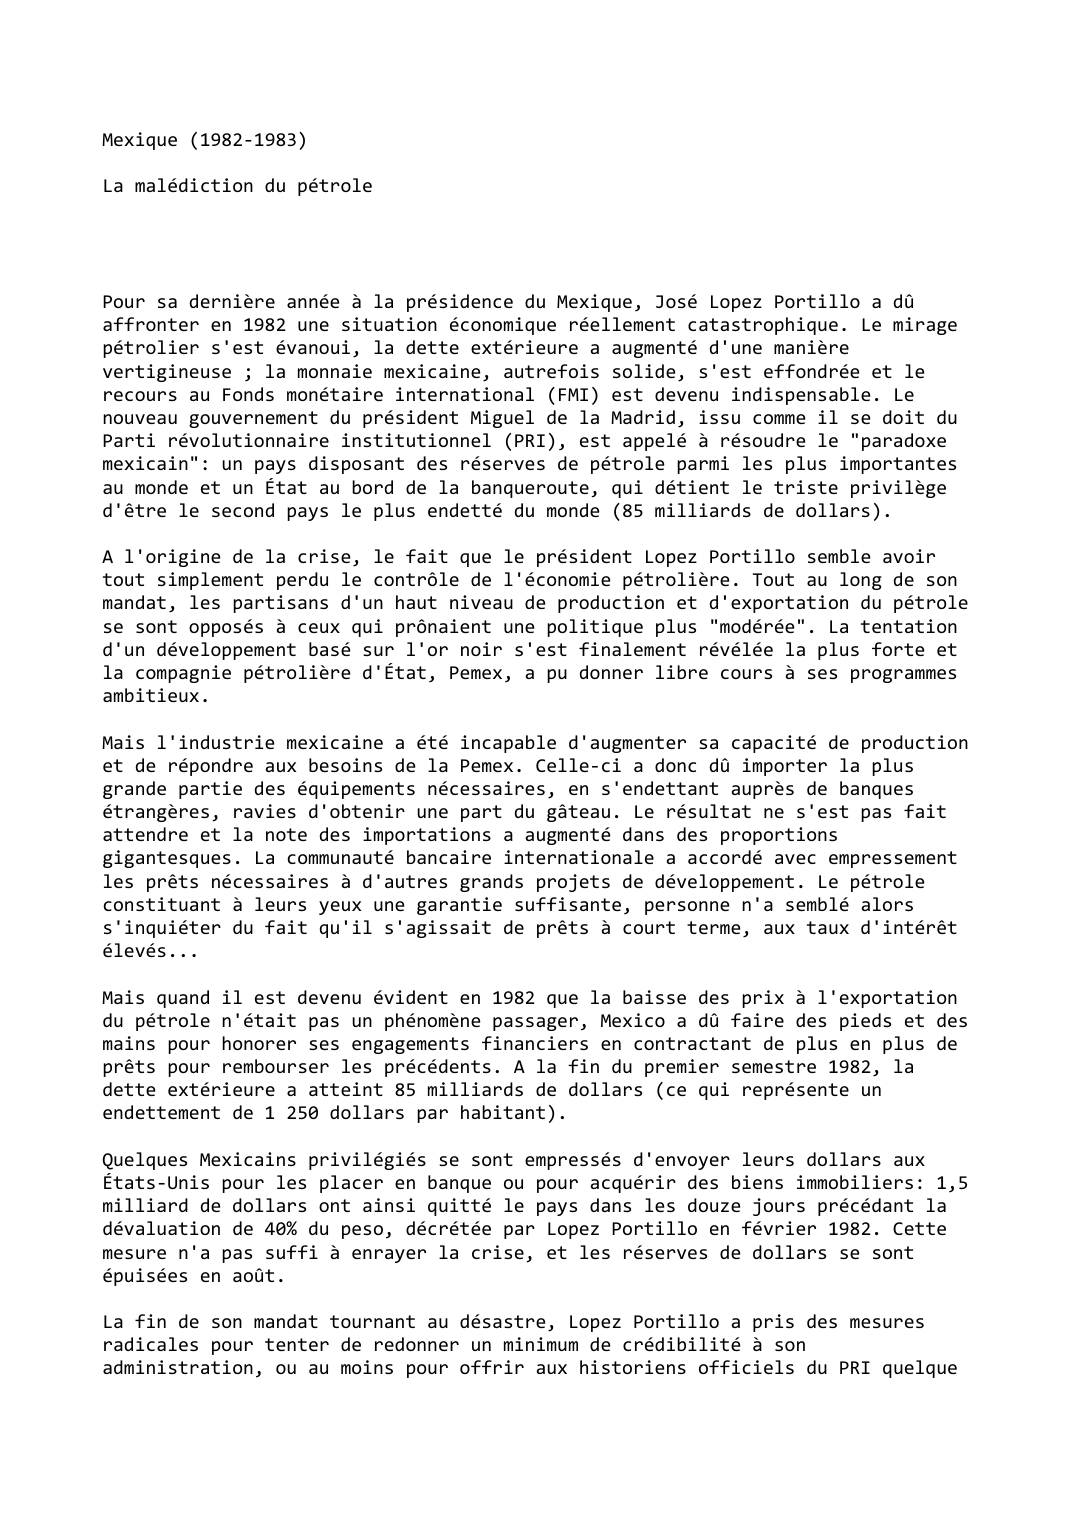 Prévisualisation du document Mexique (1982-1983)

La malédiction du pétrole